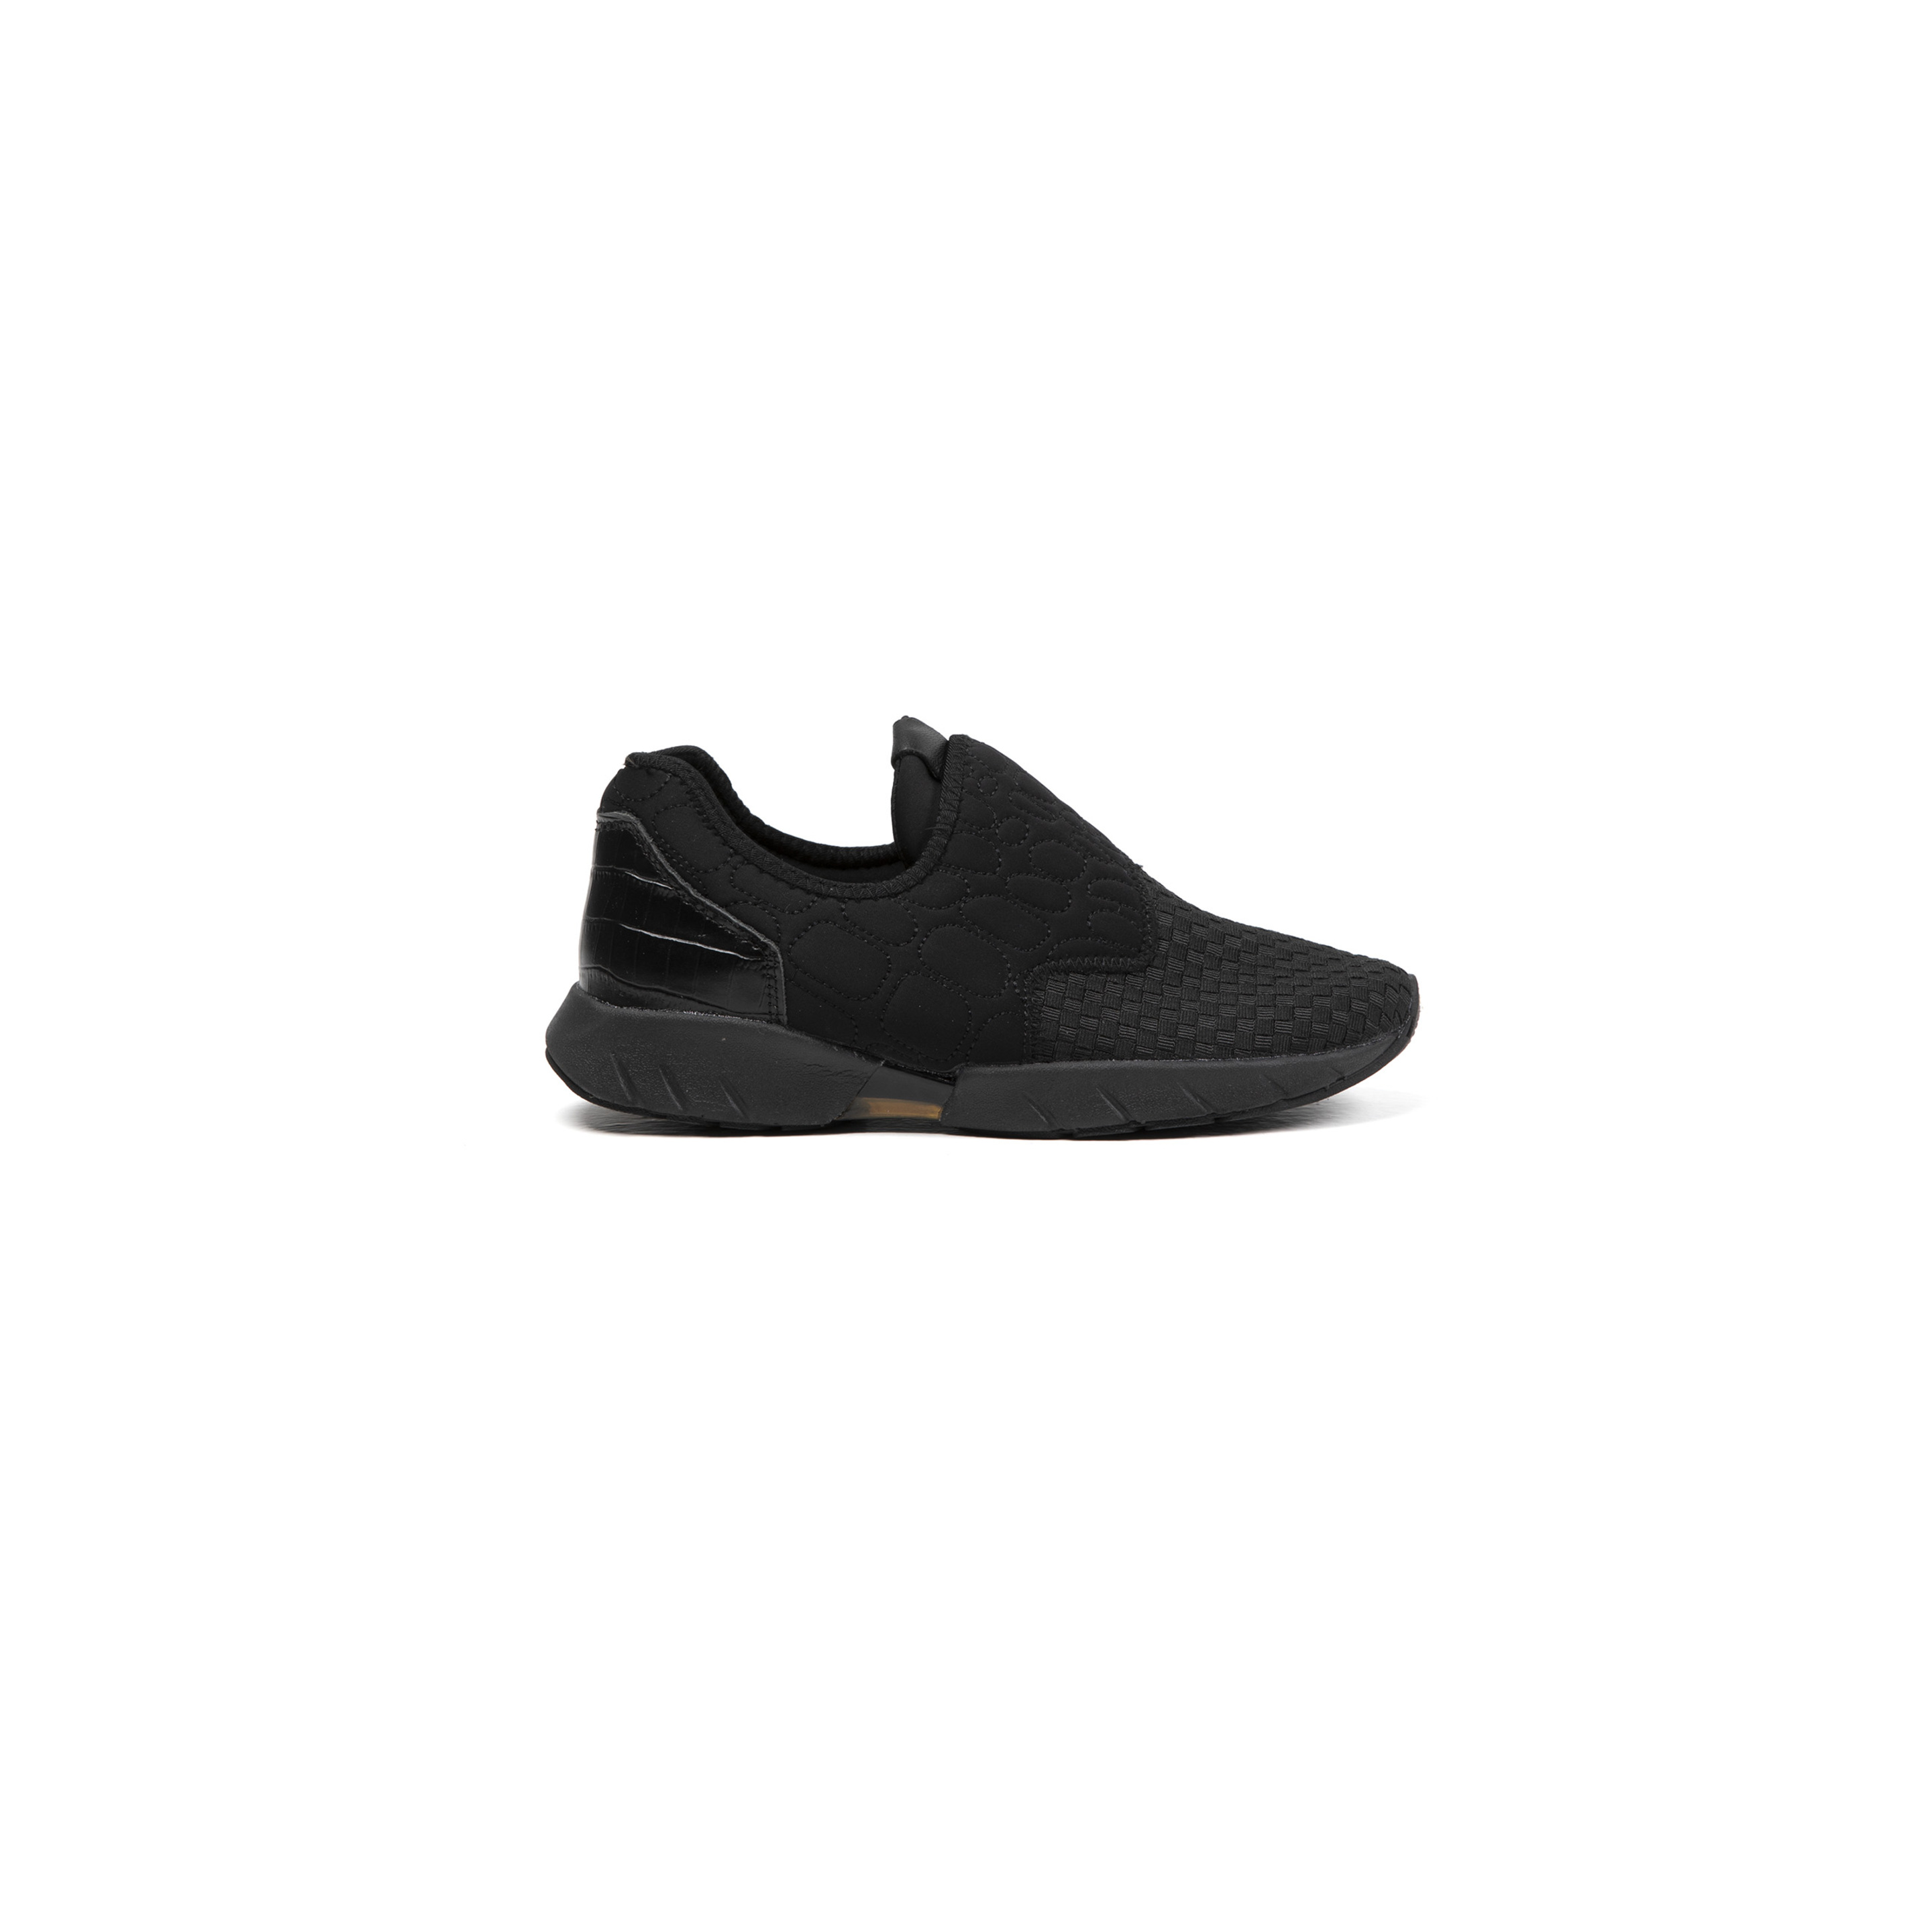 Zapatillas Deportivas De Mujer Bernie Mev De Textil En Negro (talla 35 A 42) - negro - 